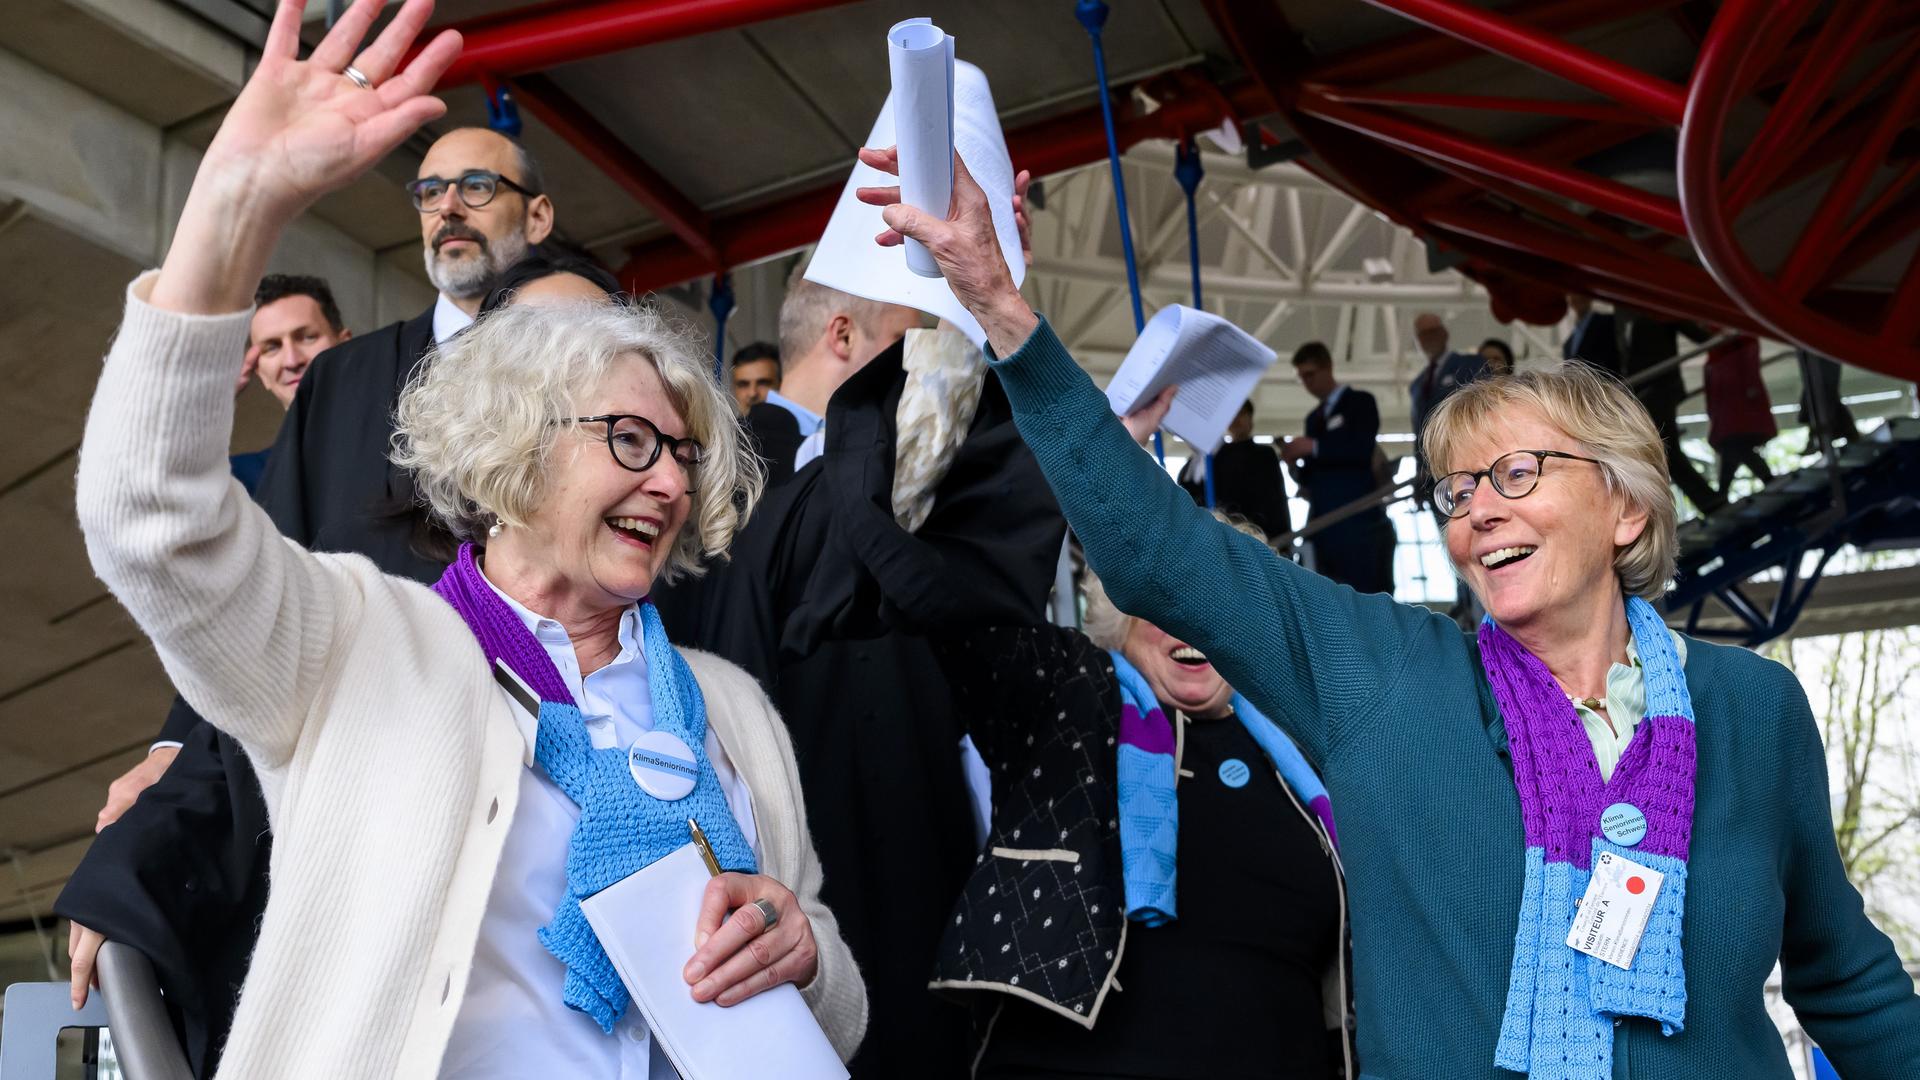 Mitglieder des Schweizer Vereins "Klimaseniorinnen" jubeln nach der Urteilsverkündung in Straßburg.